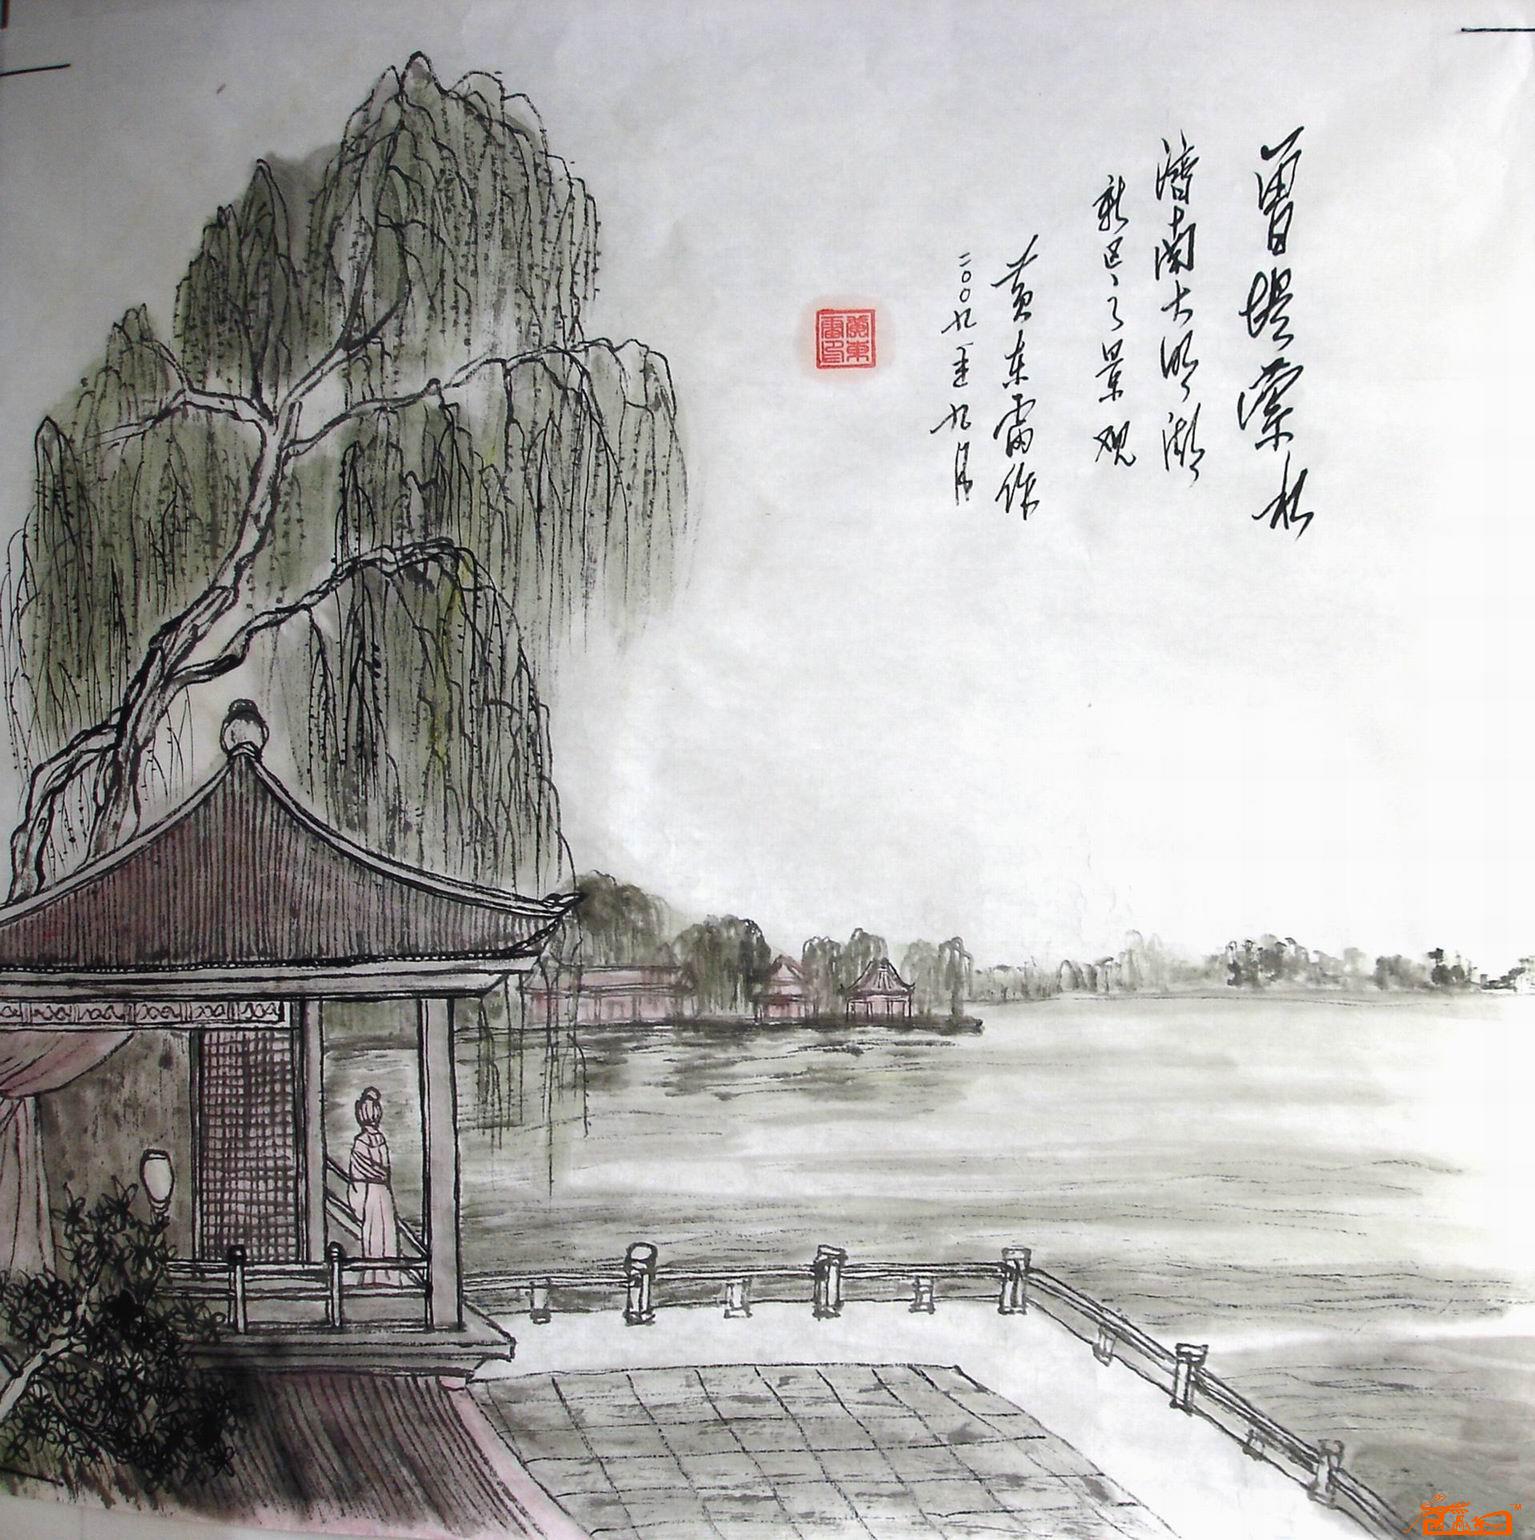 名家 黄东雷(古画王子) 山水 - 济南大明湖系列国画